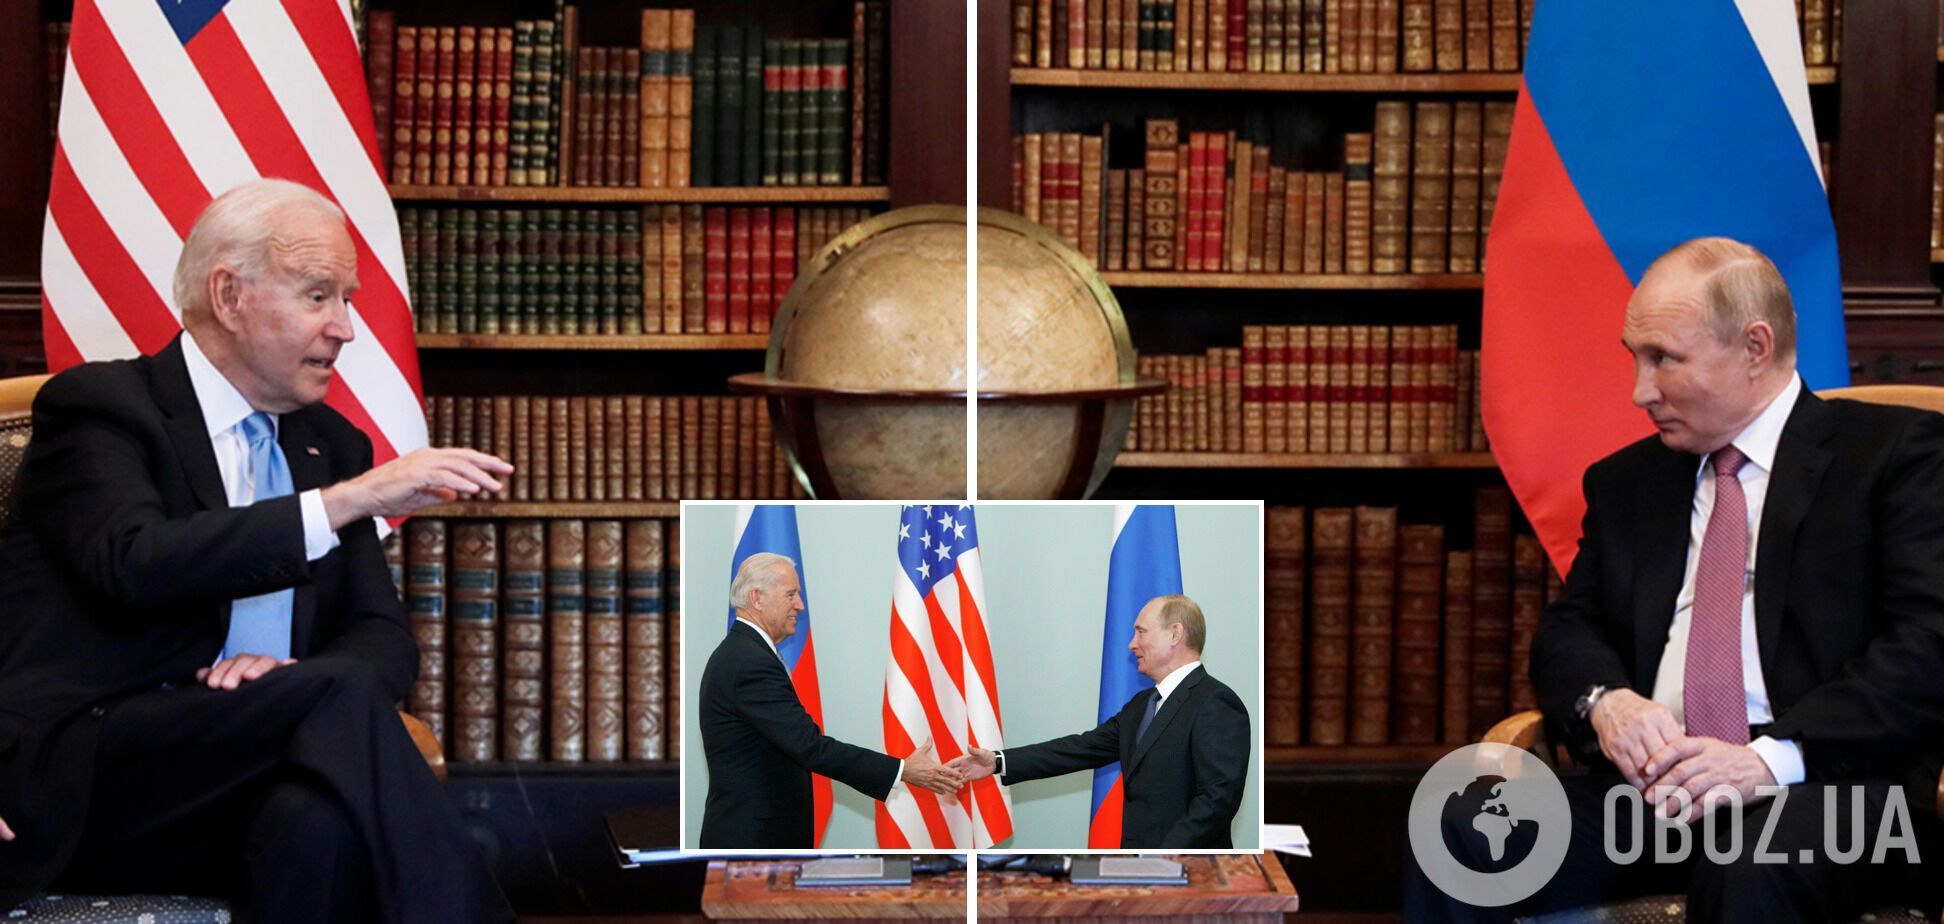 Первая встреча Байдена и Путина состоялась в Женеве (Швейцария) в июне 2021 года